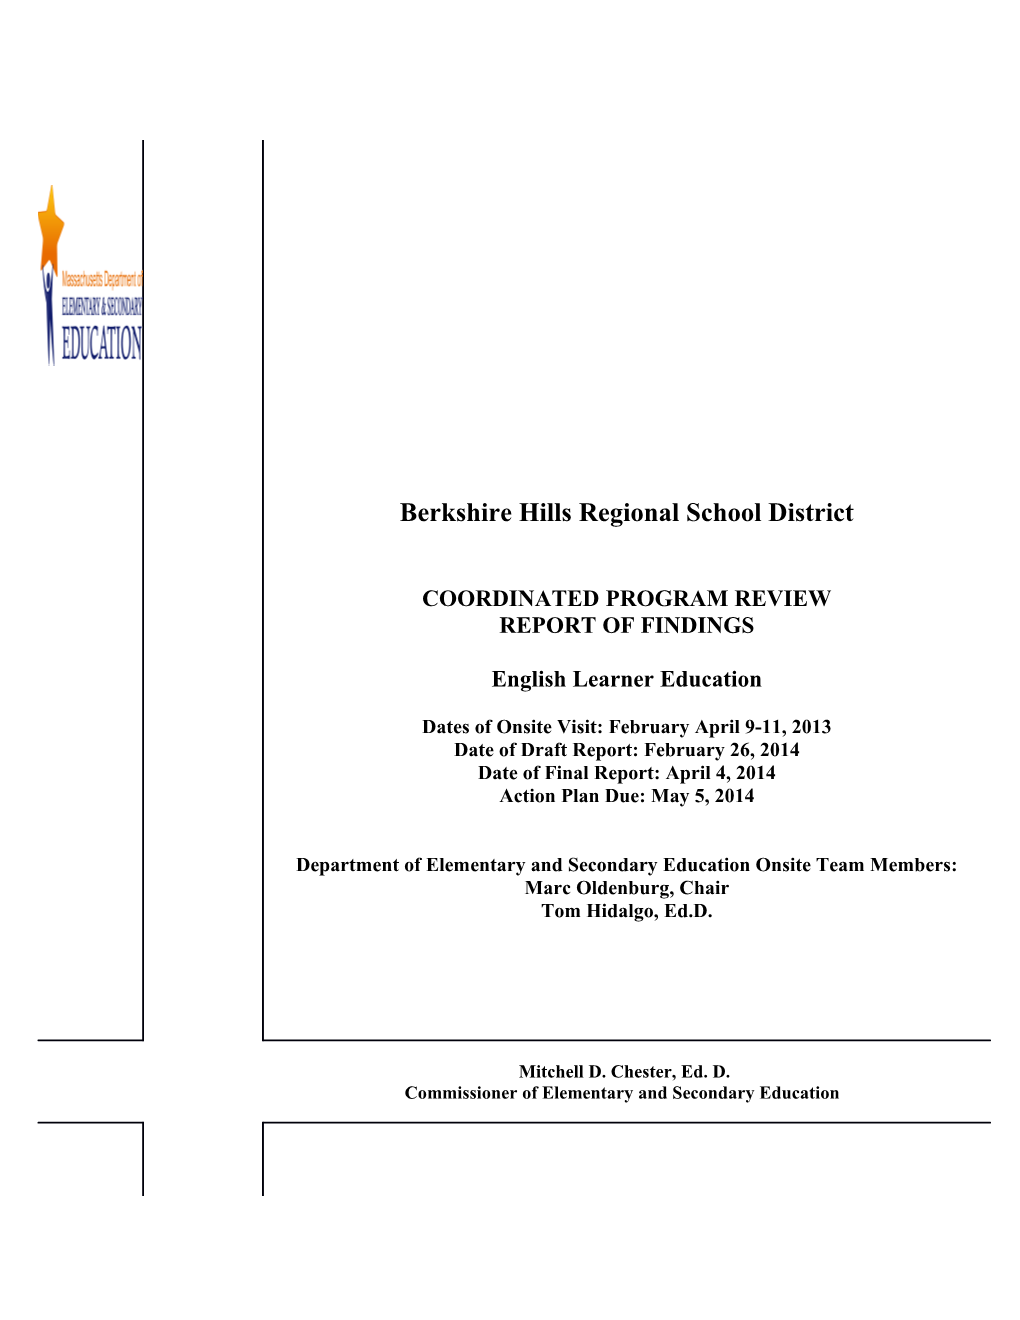 Berkshire Hills CPR Final Report 2013